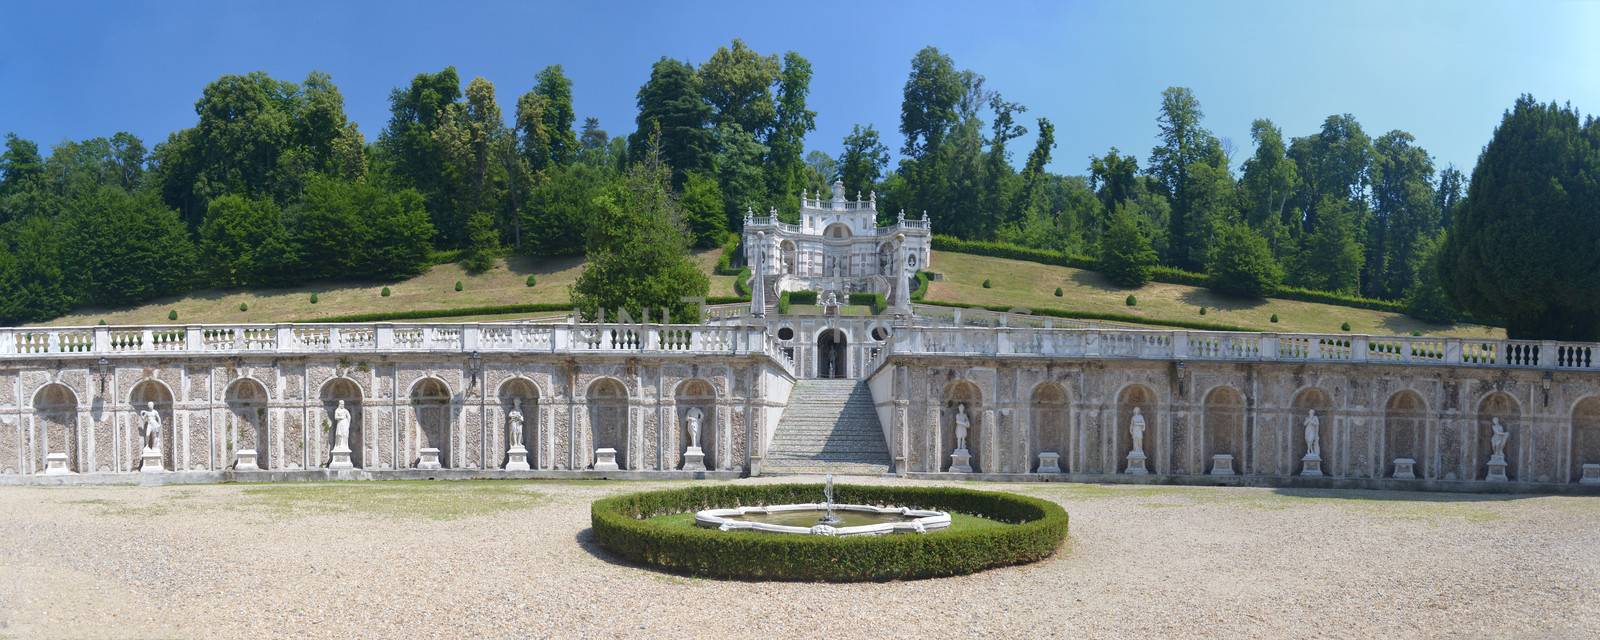 Garden of the Villa della Regina (Queen's villa) in Turin, Italy by artofphoto